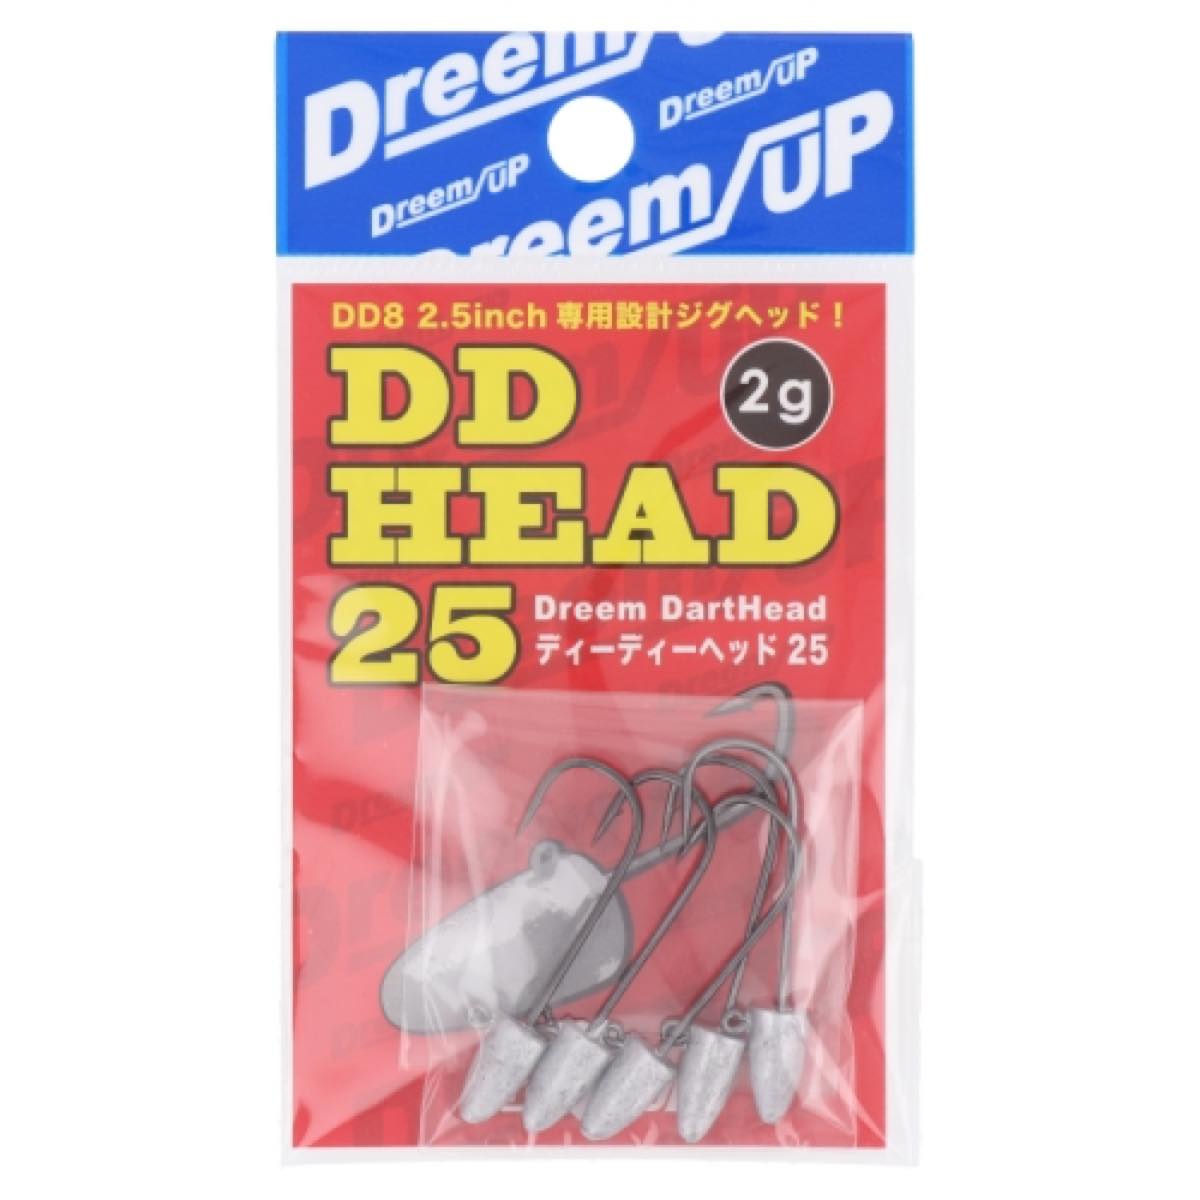 DD-HEAD25 2g ネコポス(メール便)対象商品